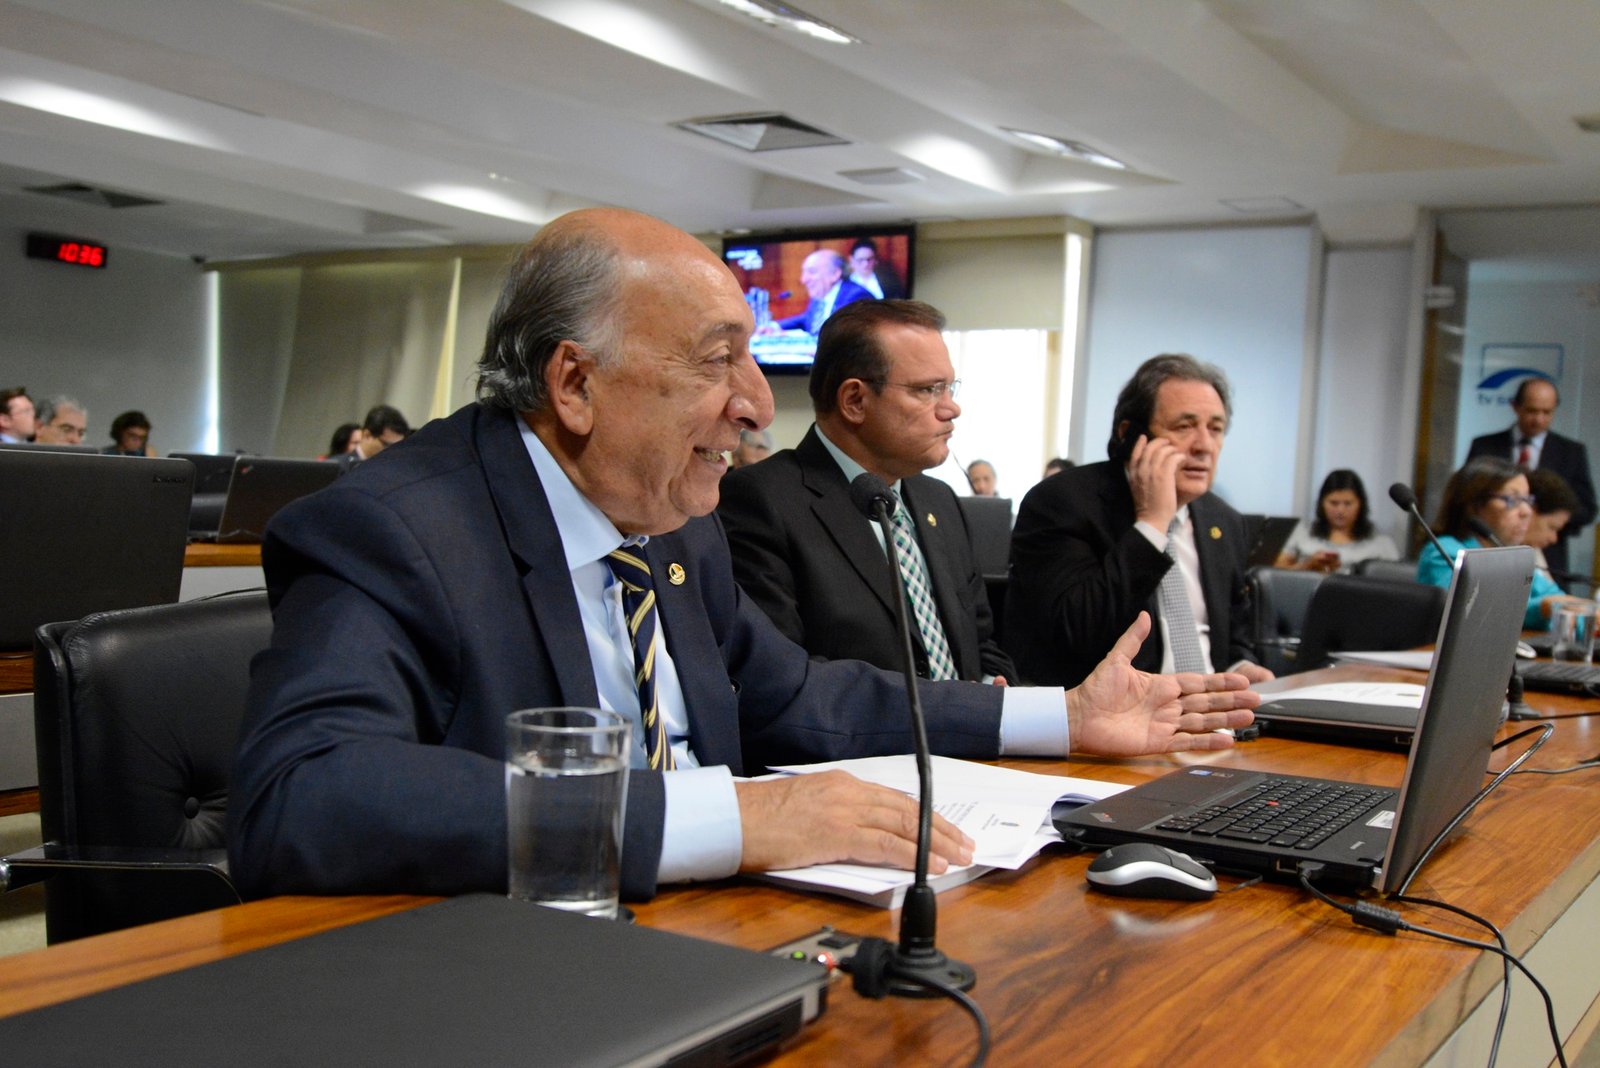 Senador Pedro Chaves na Comissão de Assuntos Econômicos - ACICG.